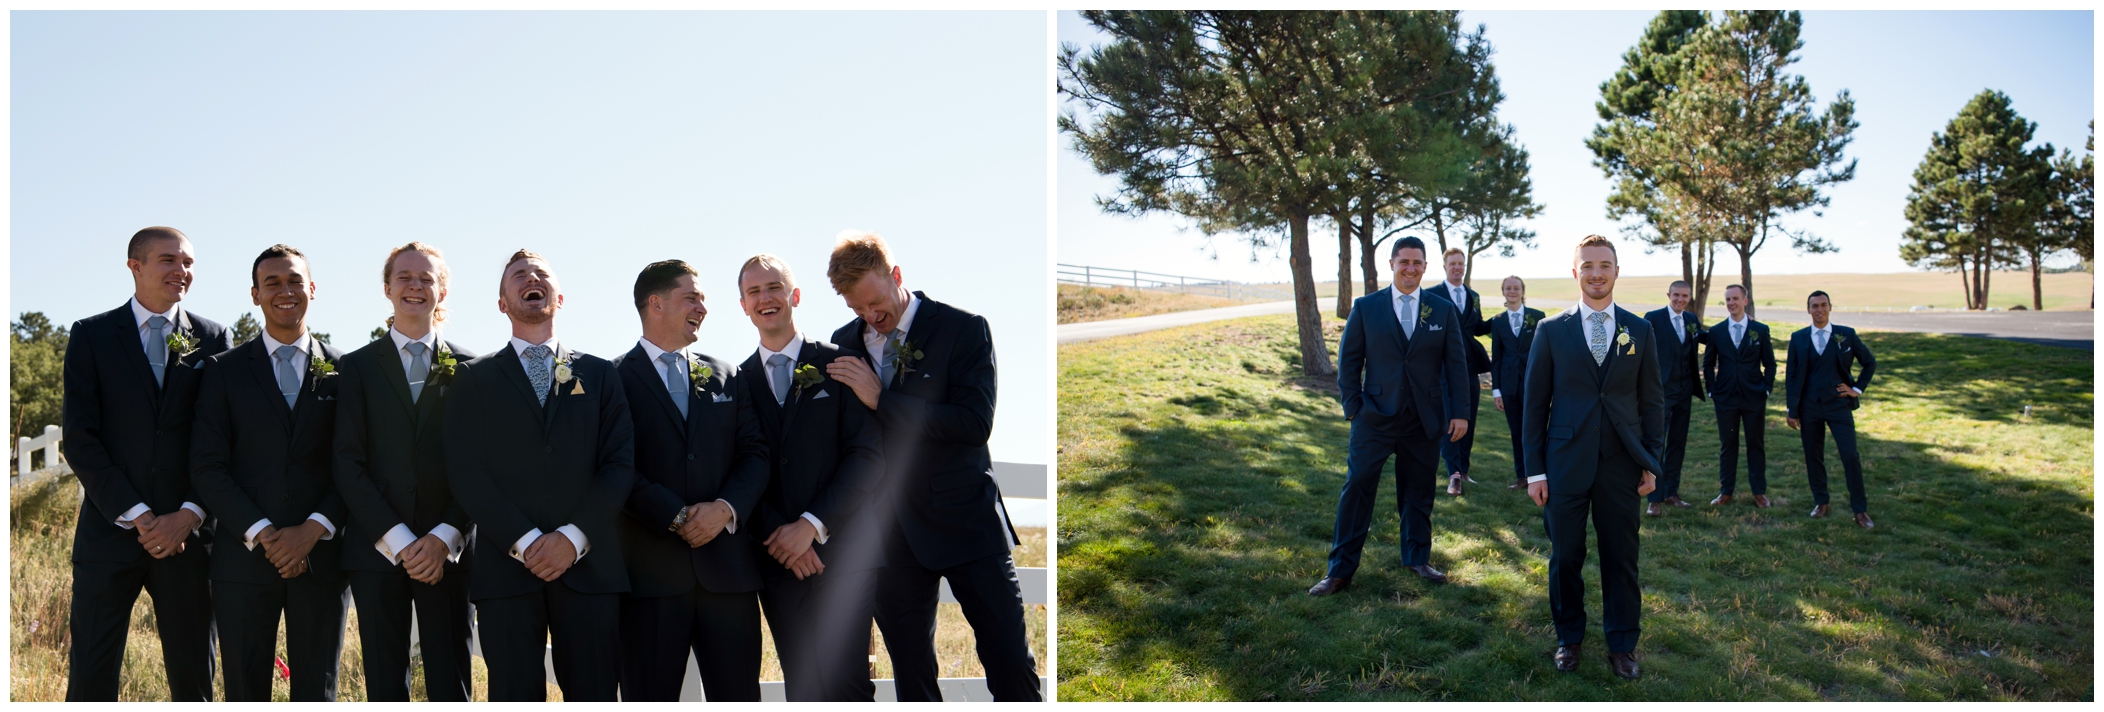 groomsmen in navy blue suits at Colorado Springs wedding 